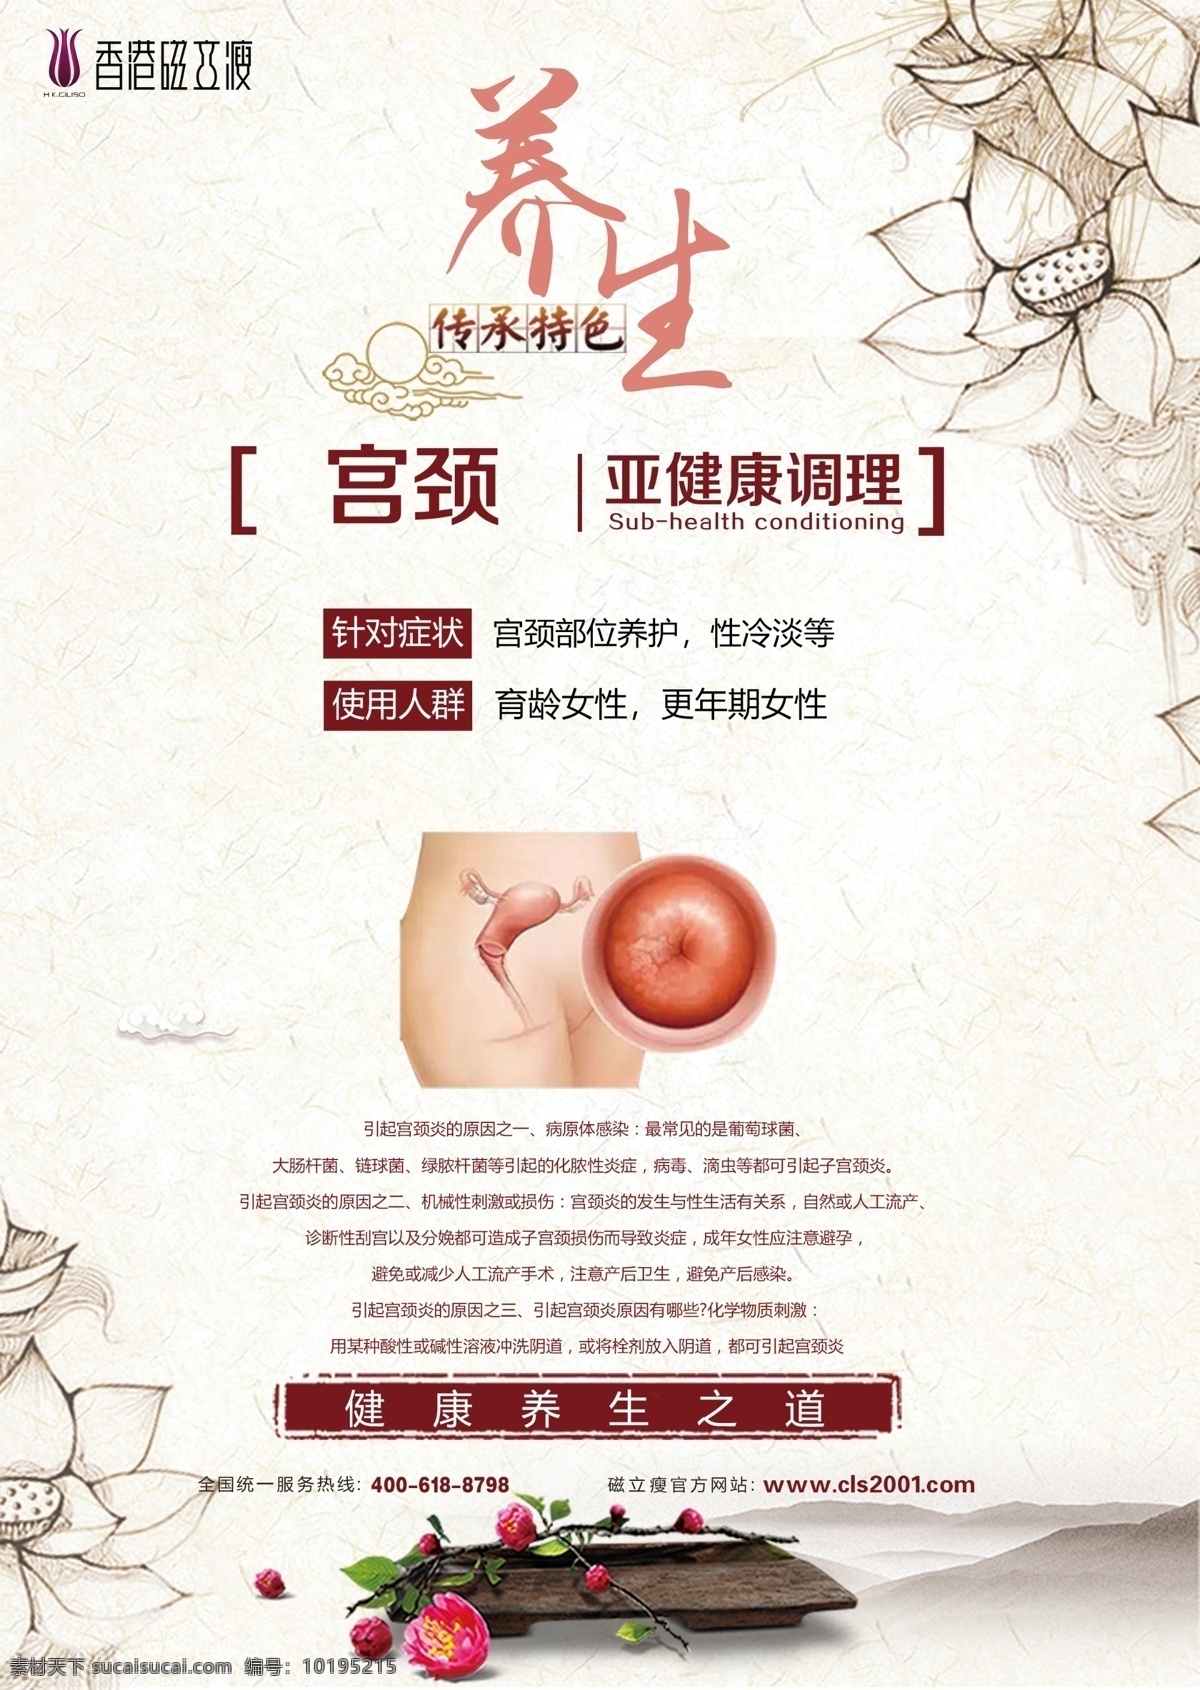 香港磁力瘦 宫颈养生 磁力瘦 宫颈 养生 女性 妇科 健康 妇女 传统 调理 广告 宣传画 宣传单 广告类型